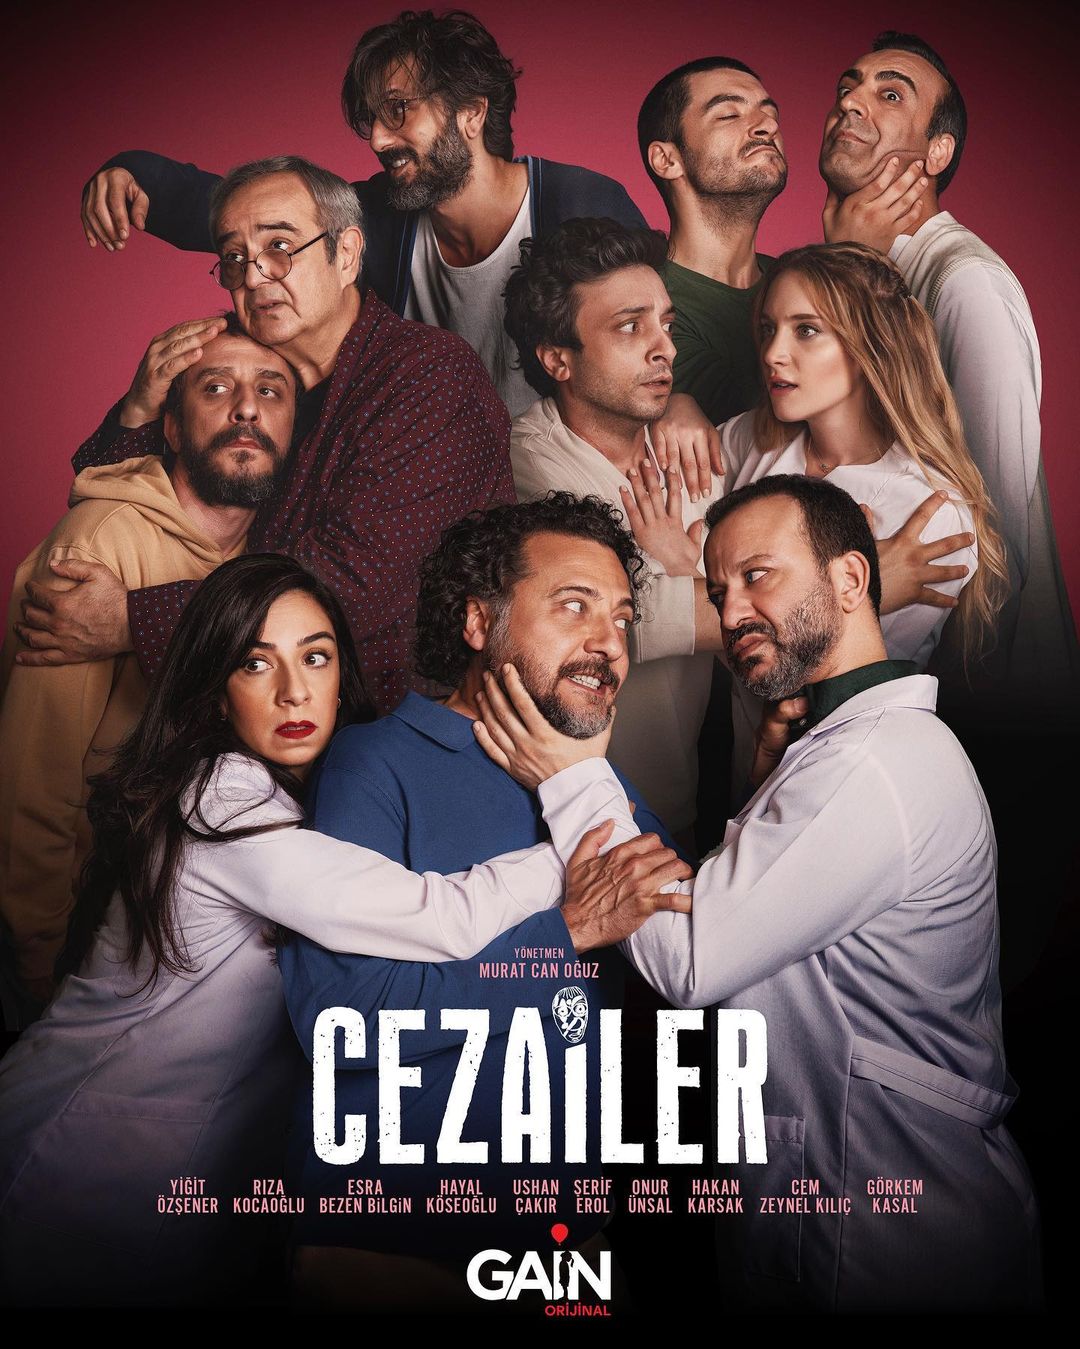 TV ratings for Cezailer in Portugal. Gain TV series